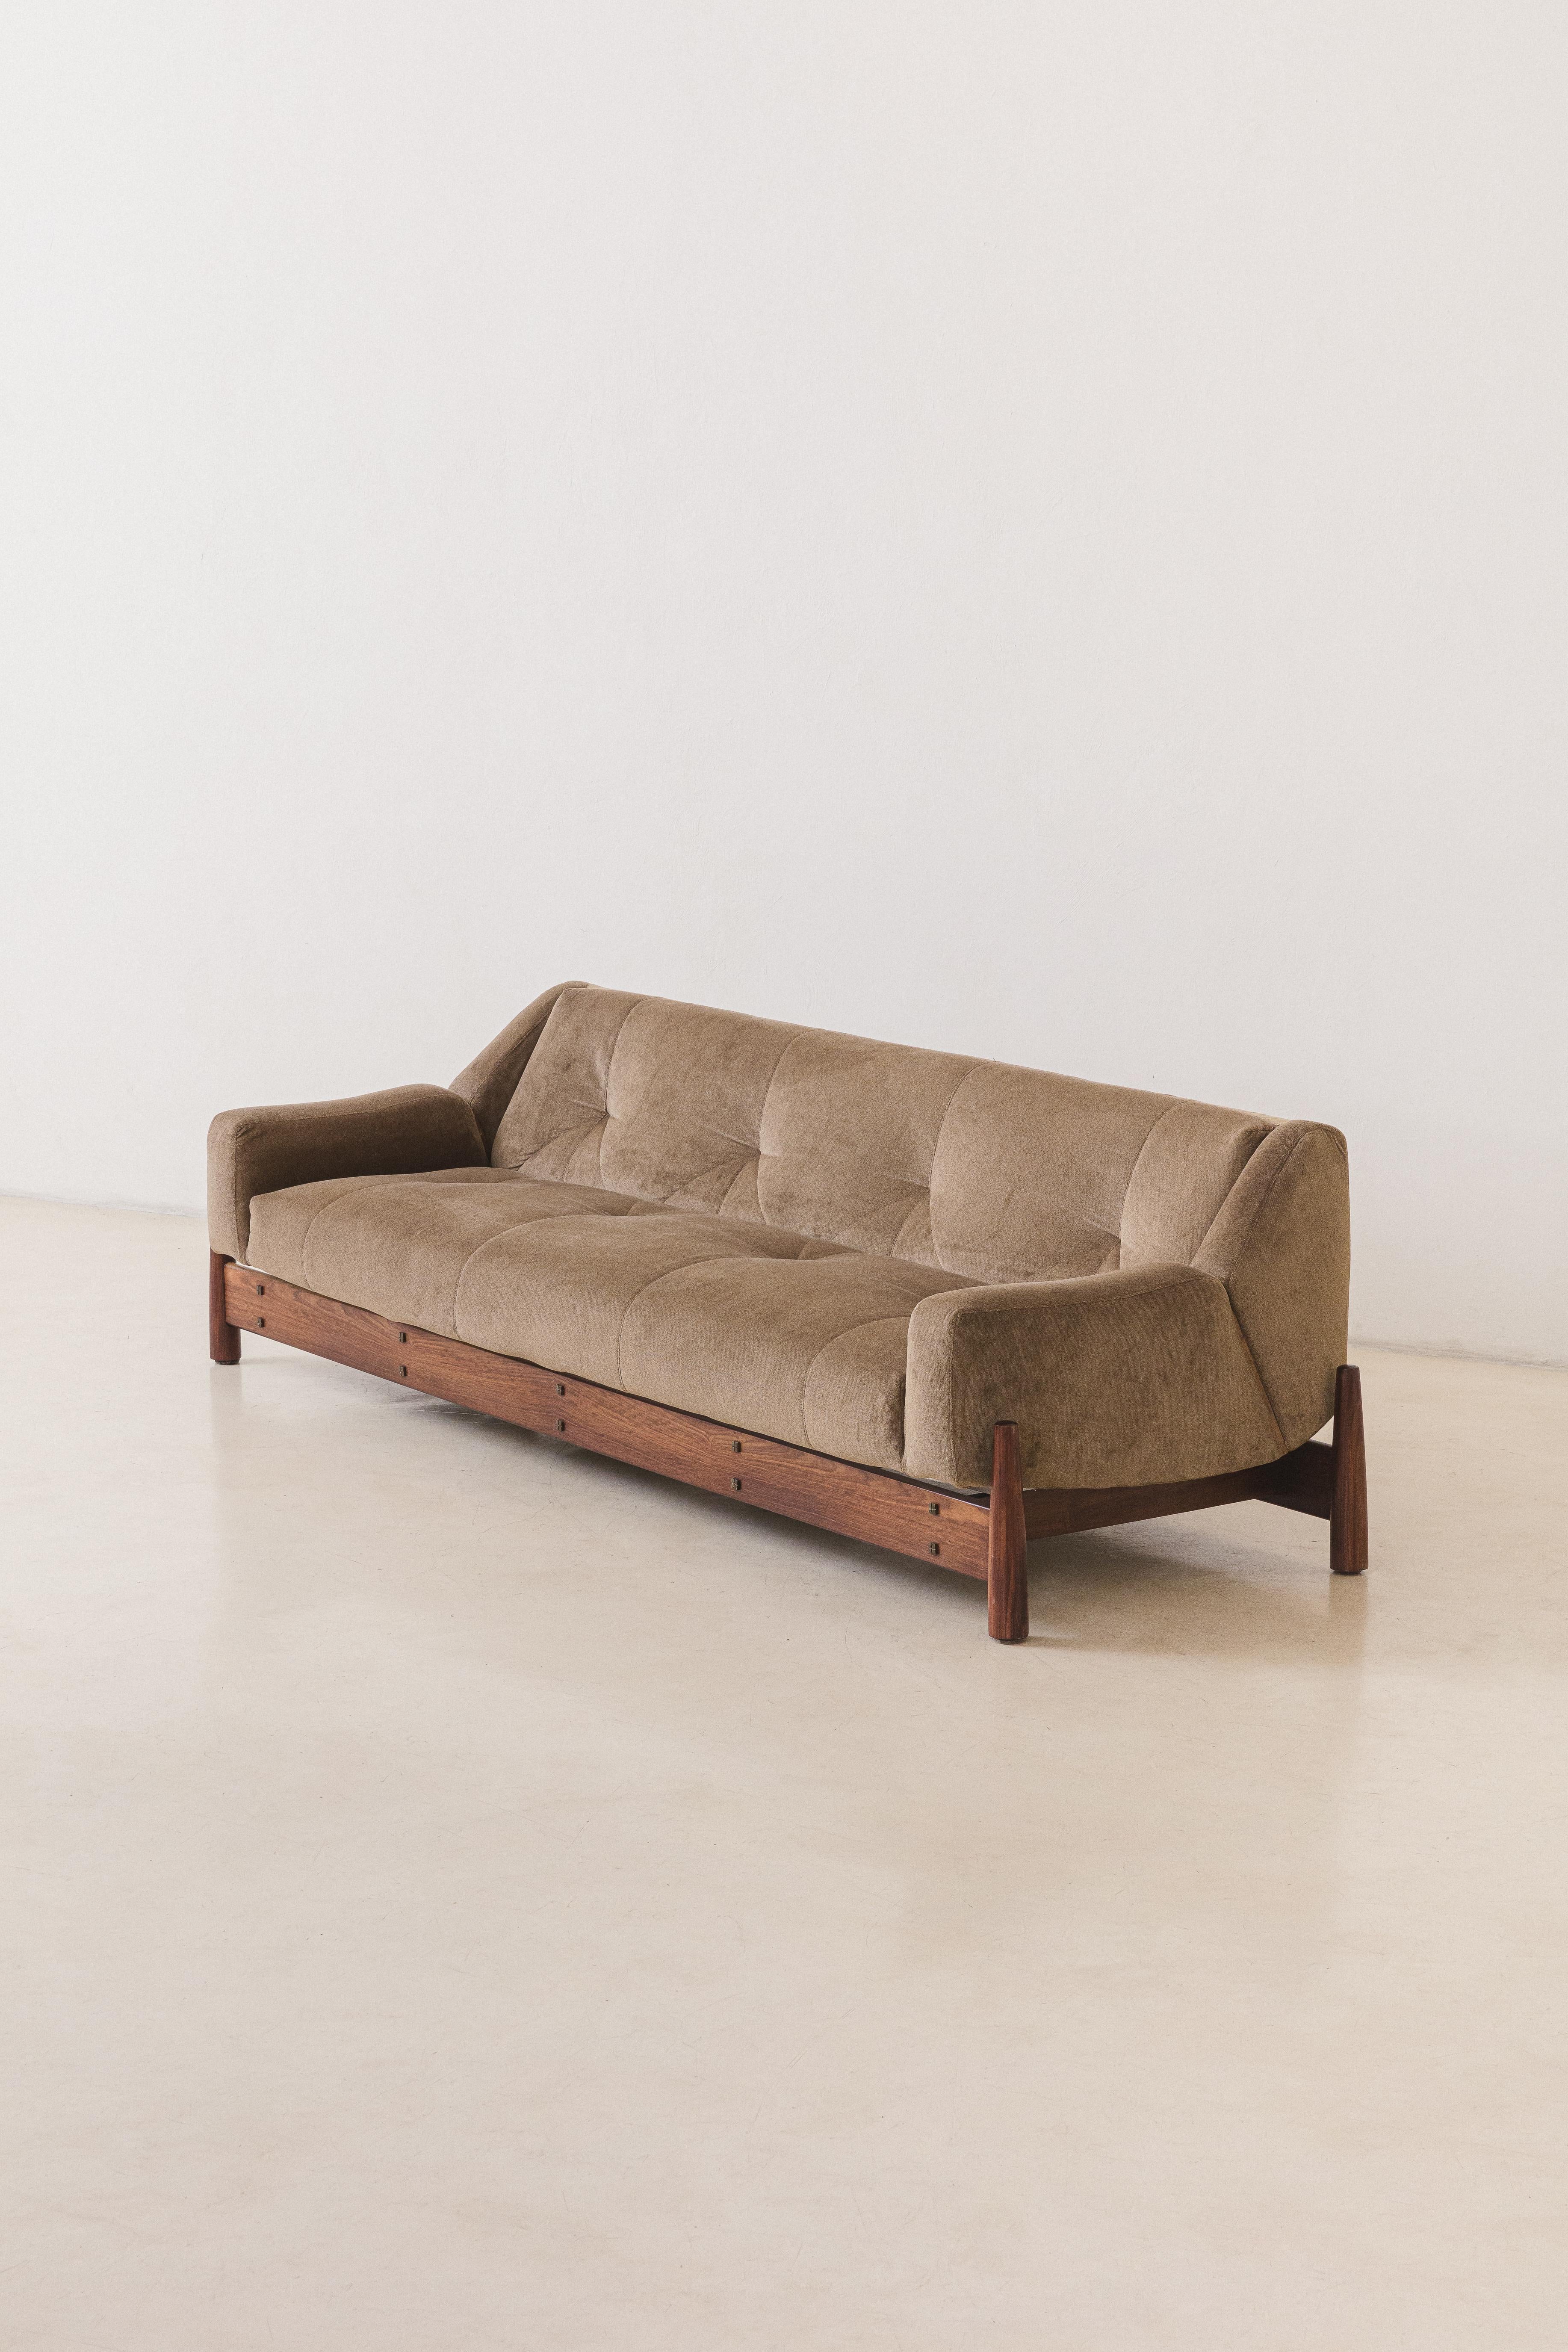 Dieses Imbuia-Sofa wurde in den 1960er Jahren von dem brasilianischen Unternehmen Móveis Cimo hergestellt, einem Pionier der brasilianischen Möbelindustrie.

Cimo Sofa ist sehr charmant, da Sitz und Rückenlehne aus einem Stück bestehen und über der